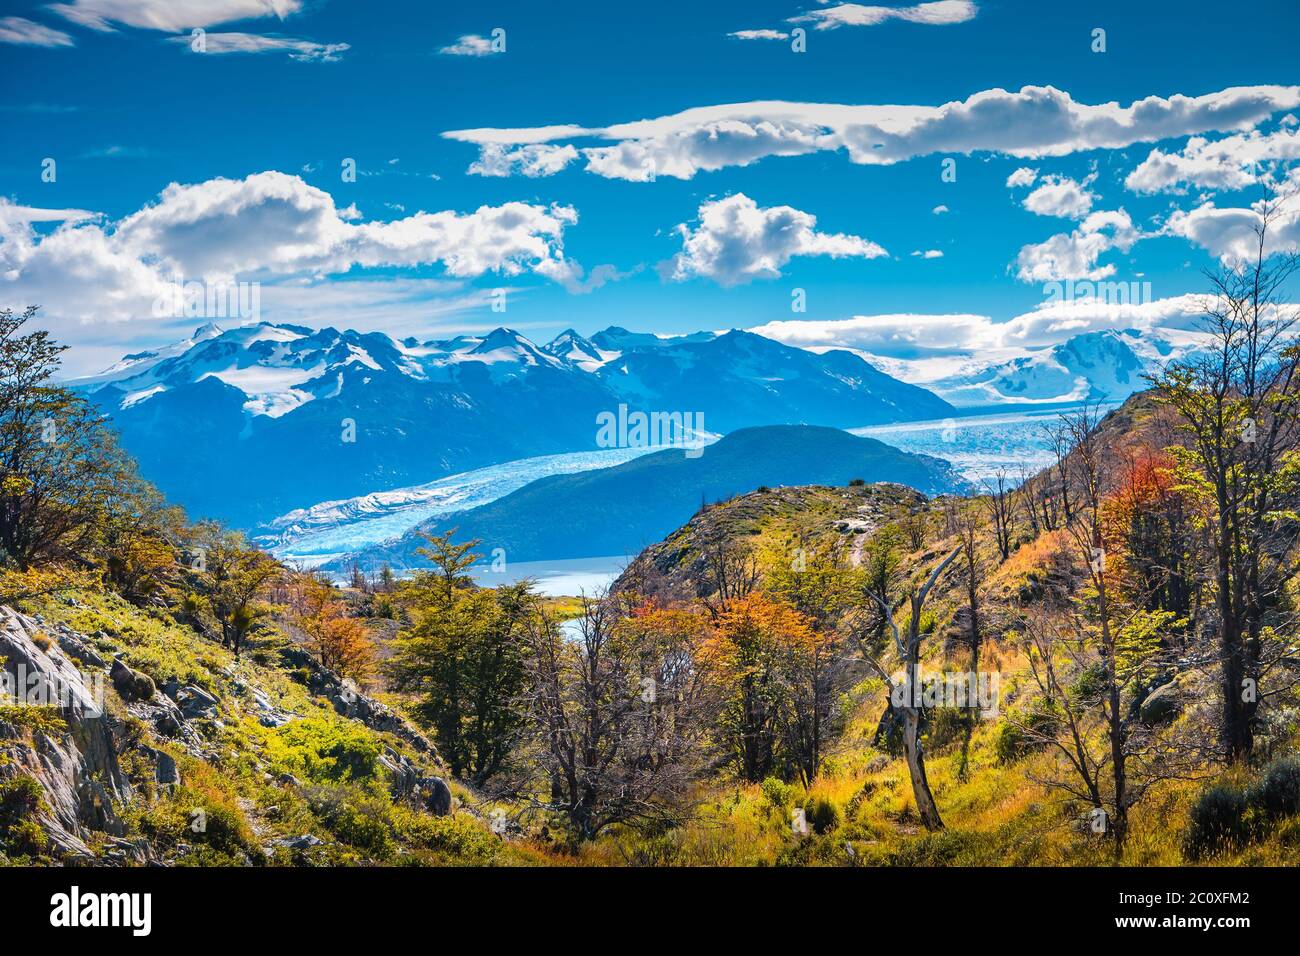 Vue panoramique du parc national Torres del Paine, ses lagons et ses glaciers, Patagonie, Chili, journée ensoleillée, ciel bleu Banque D'Images